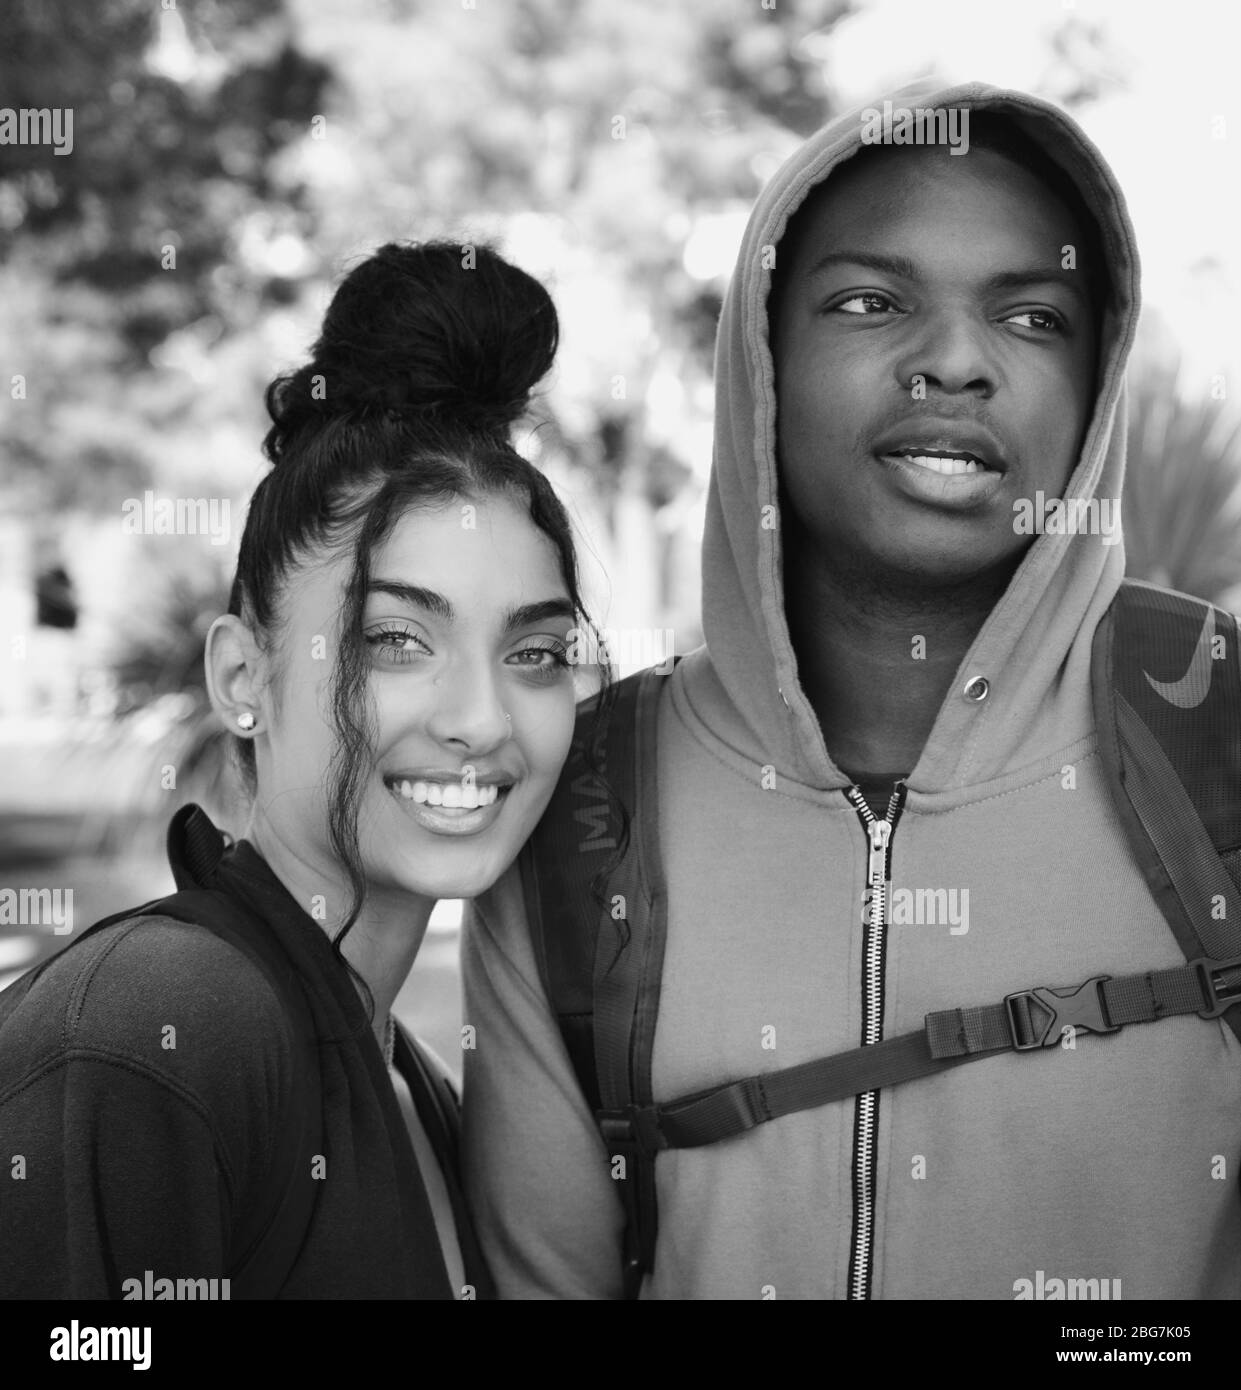 Una giovane donna e un uomo di colore adorabile, godetevi la vita del campus come studenti con felpa con cappuccio e capelli trendy up-do e sorride alla U di A a Tucson, Arizona Foto Stock